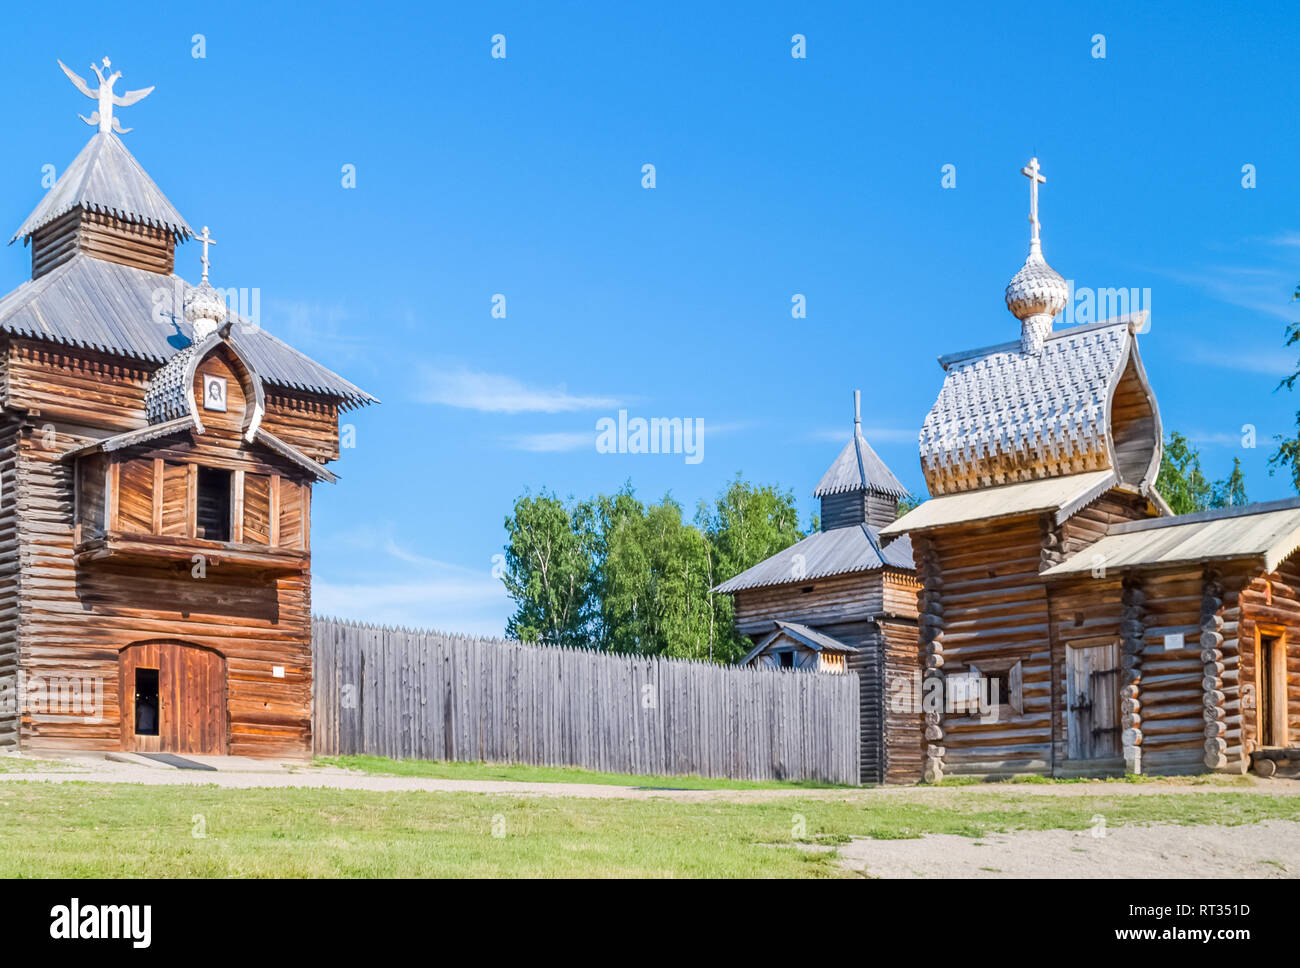 Taltsy è un patrimonio architettonico e museo etnografico del Siberiano architettura in legno. Foto Stock